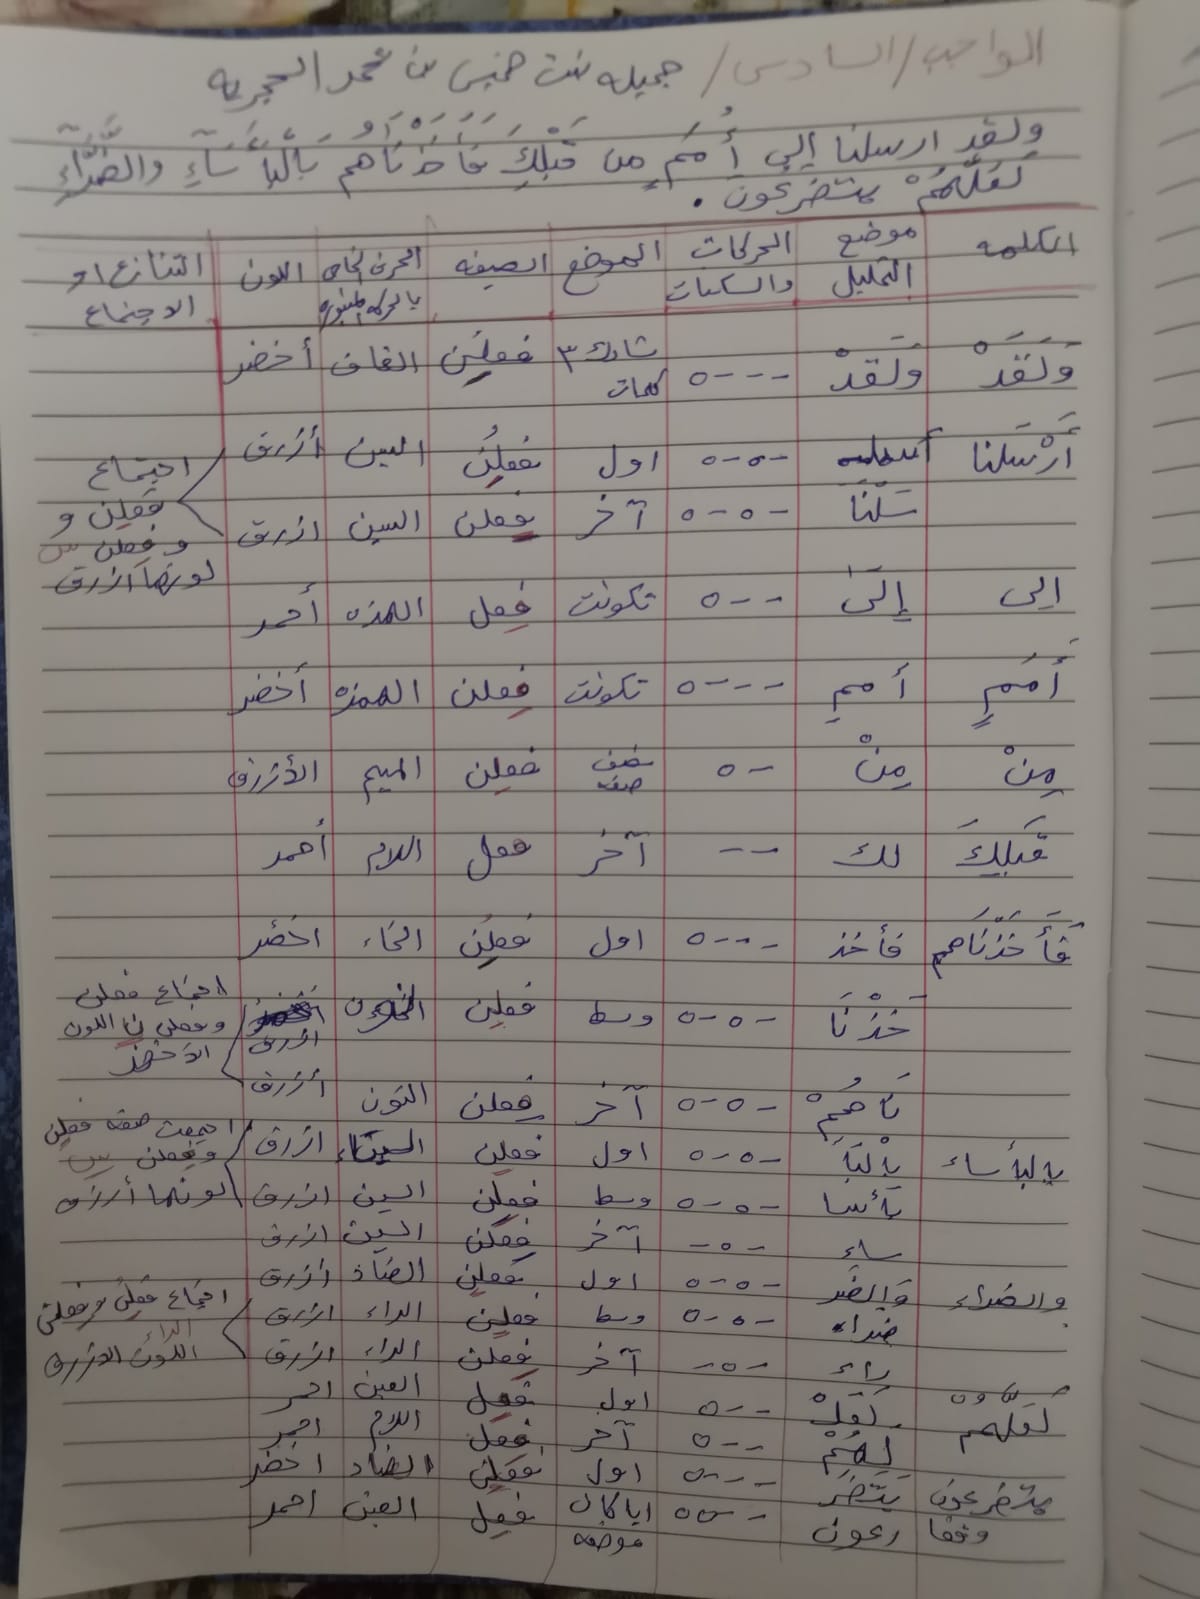 المحاضرة الثامنة  للدورة6 للرجال و9 للنساء للنبر في القرآن الكريم للأستاذ الدكتور وليد مقبل الديب - صفحة 2 122932423